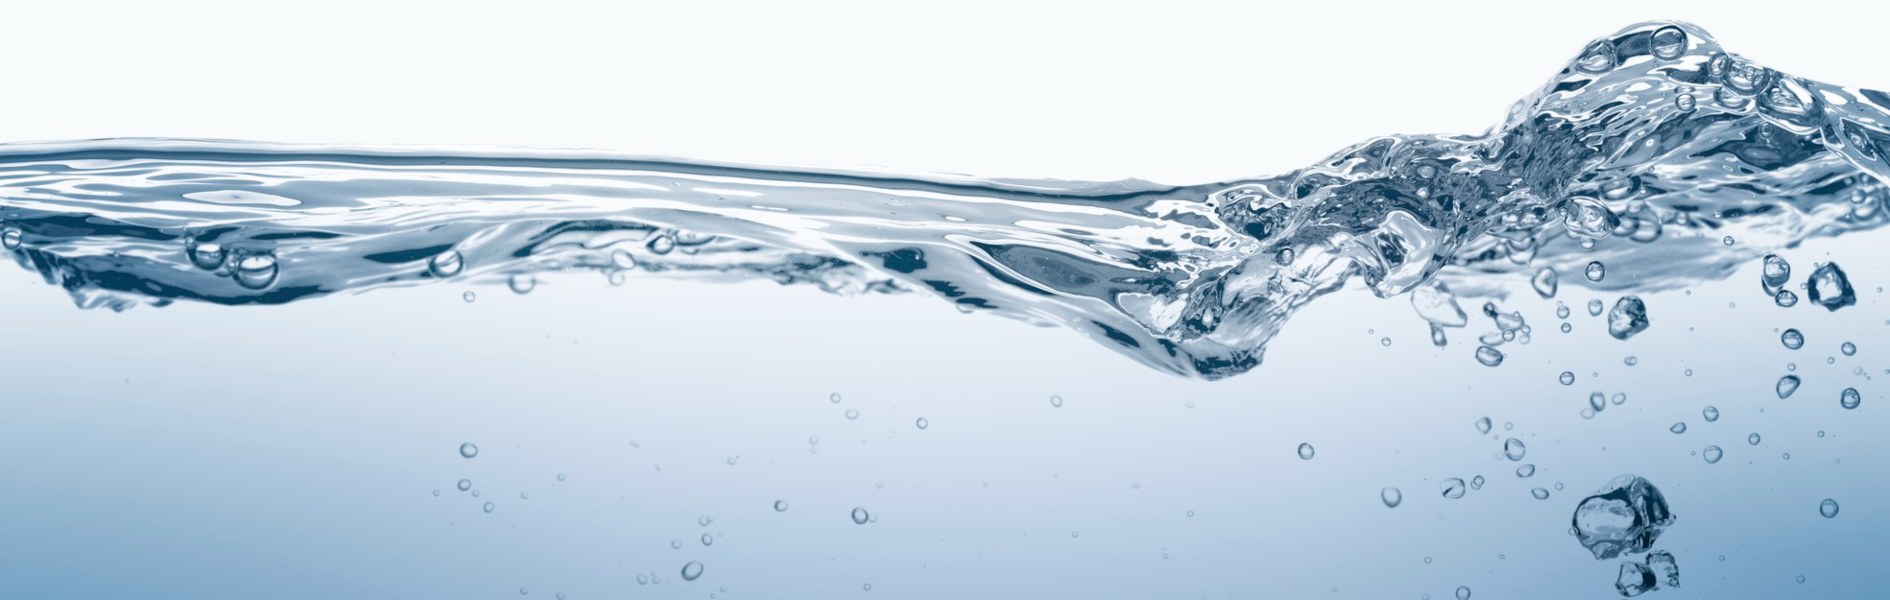 Preguntas Frecuentes sobre el Uso del Agua en la Industria